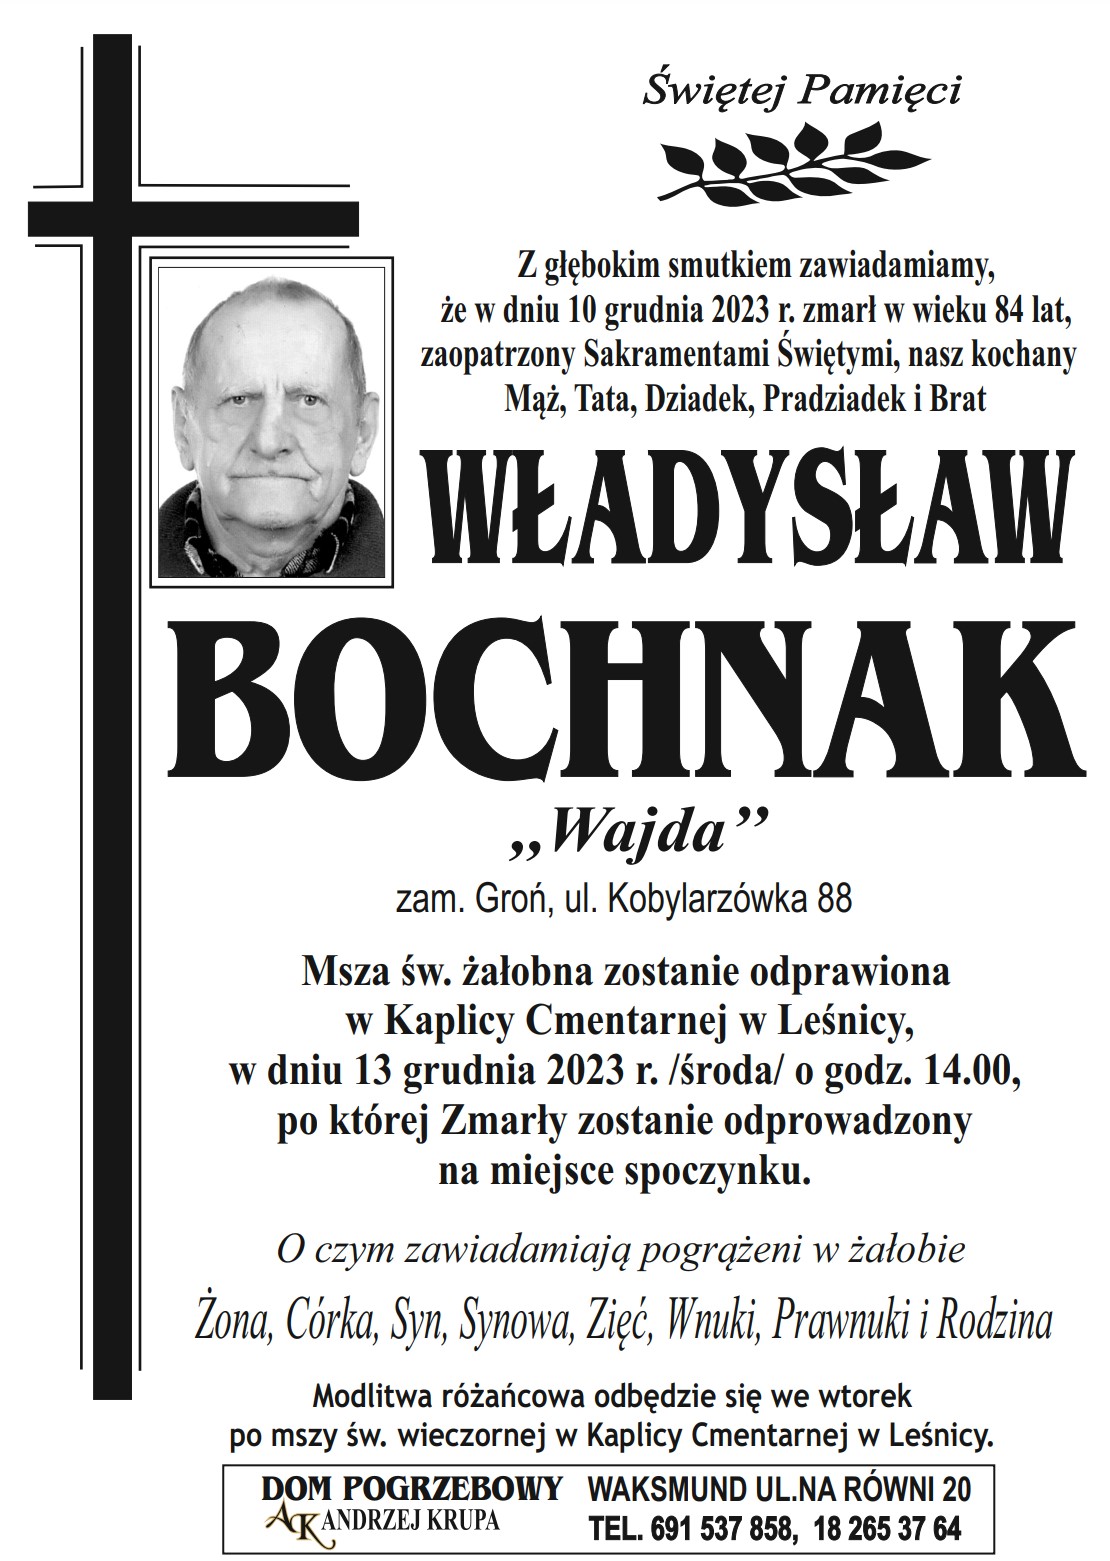 Władysław Bochnak